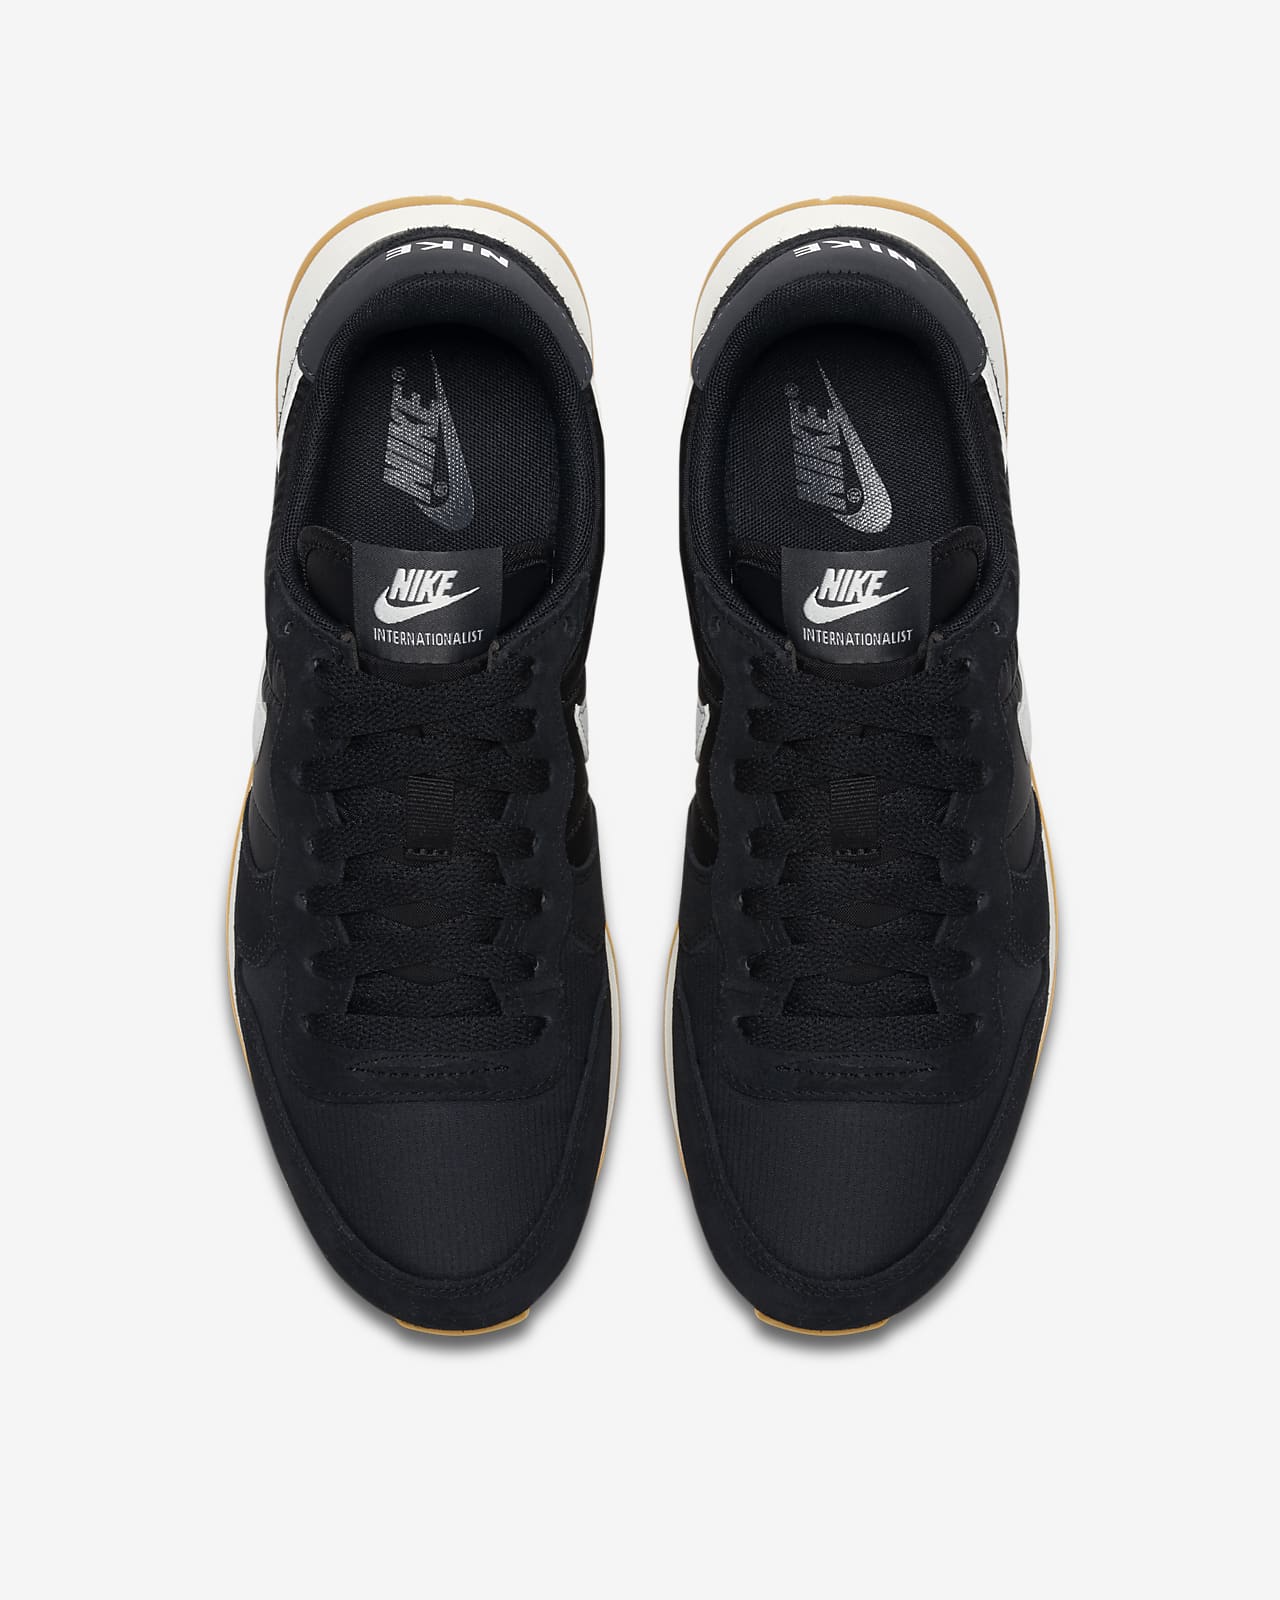 nike internationalist sneakers in black